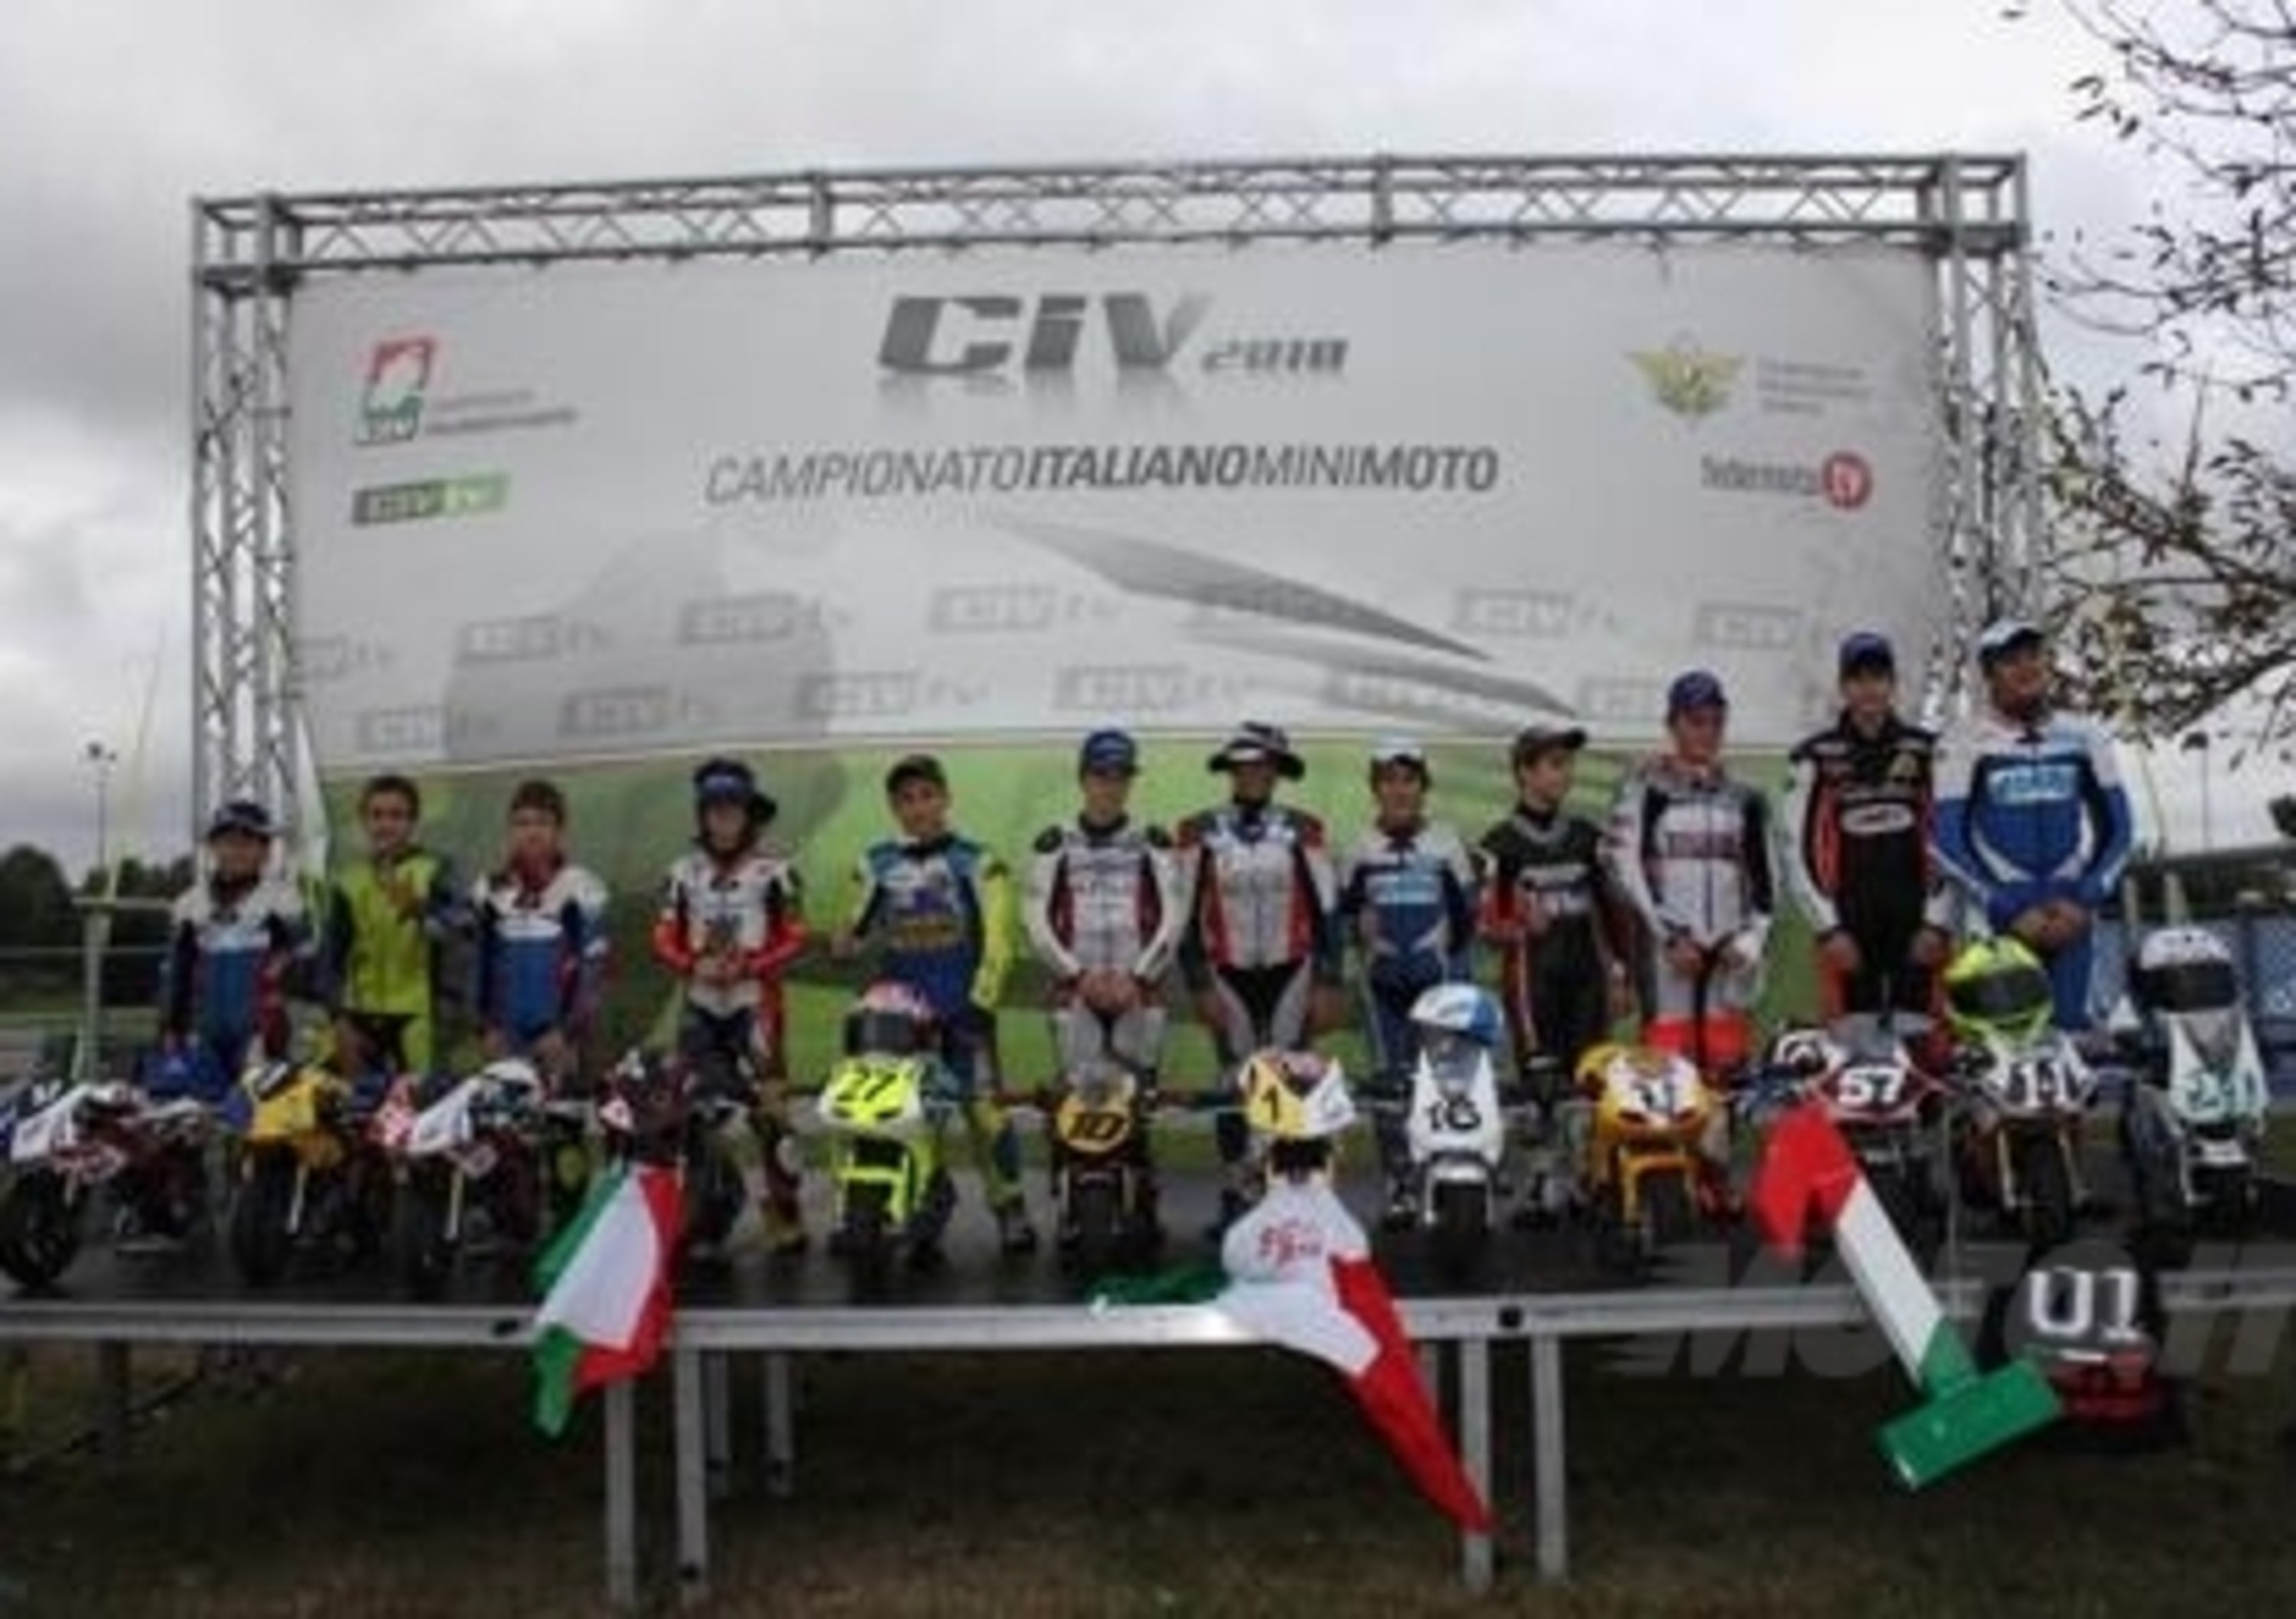 Campionato italiano minimoto 2011: tutte le novit&agrave;